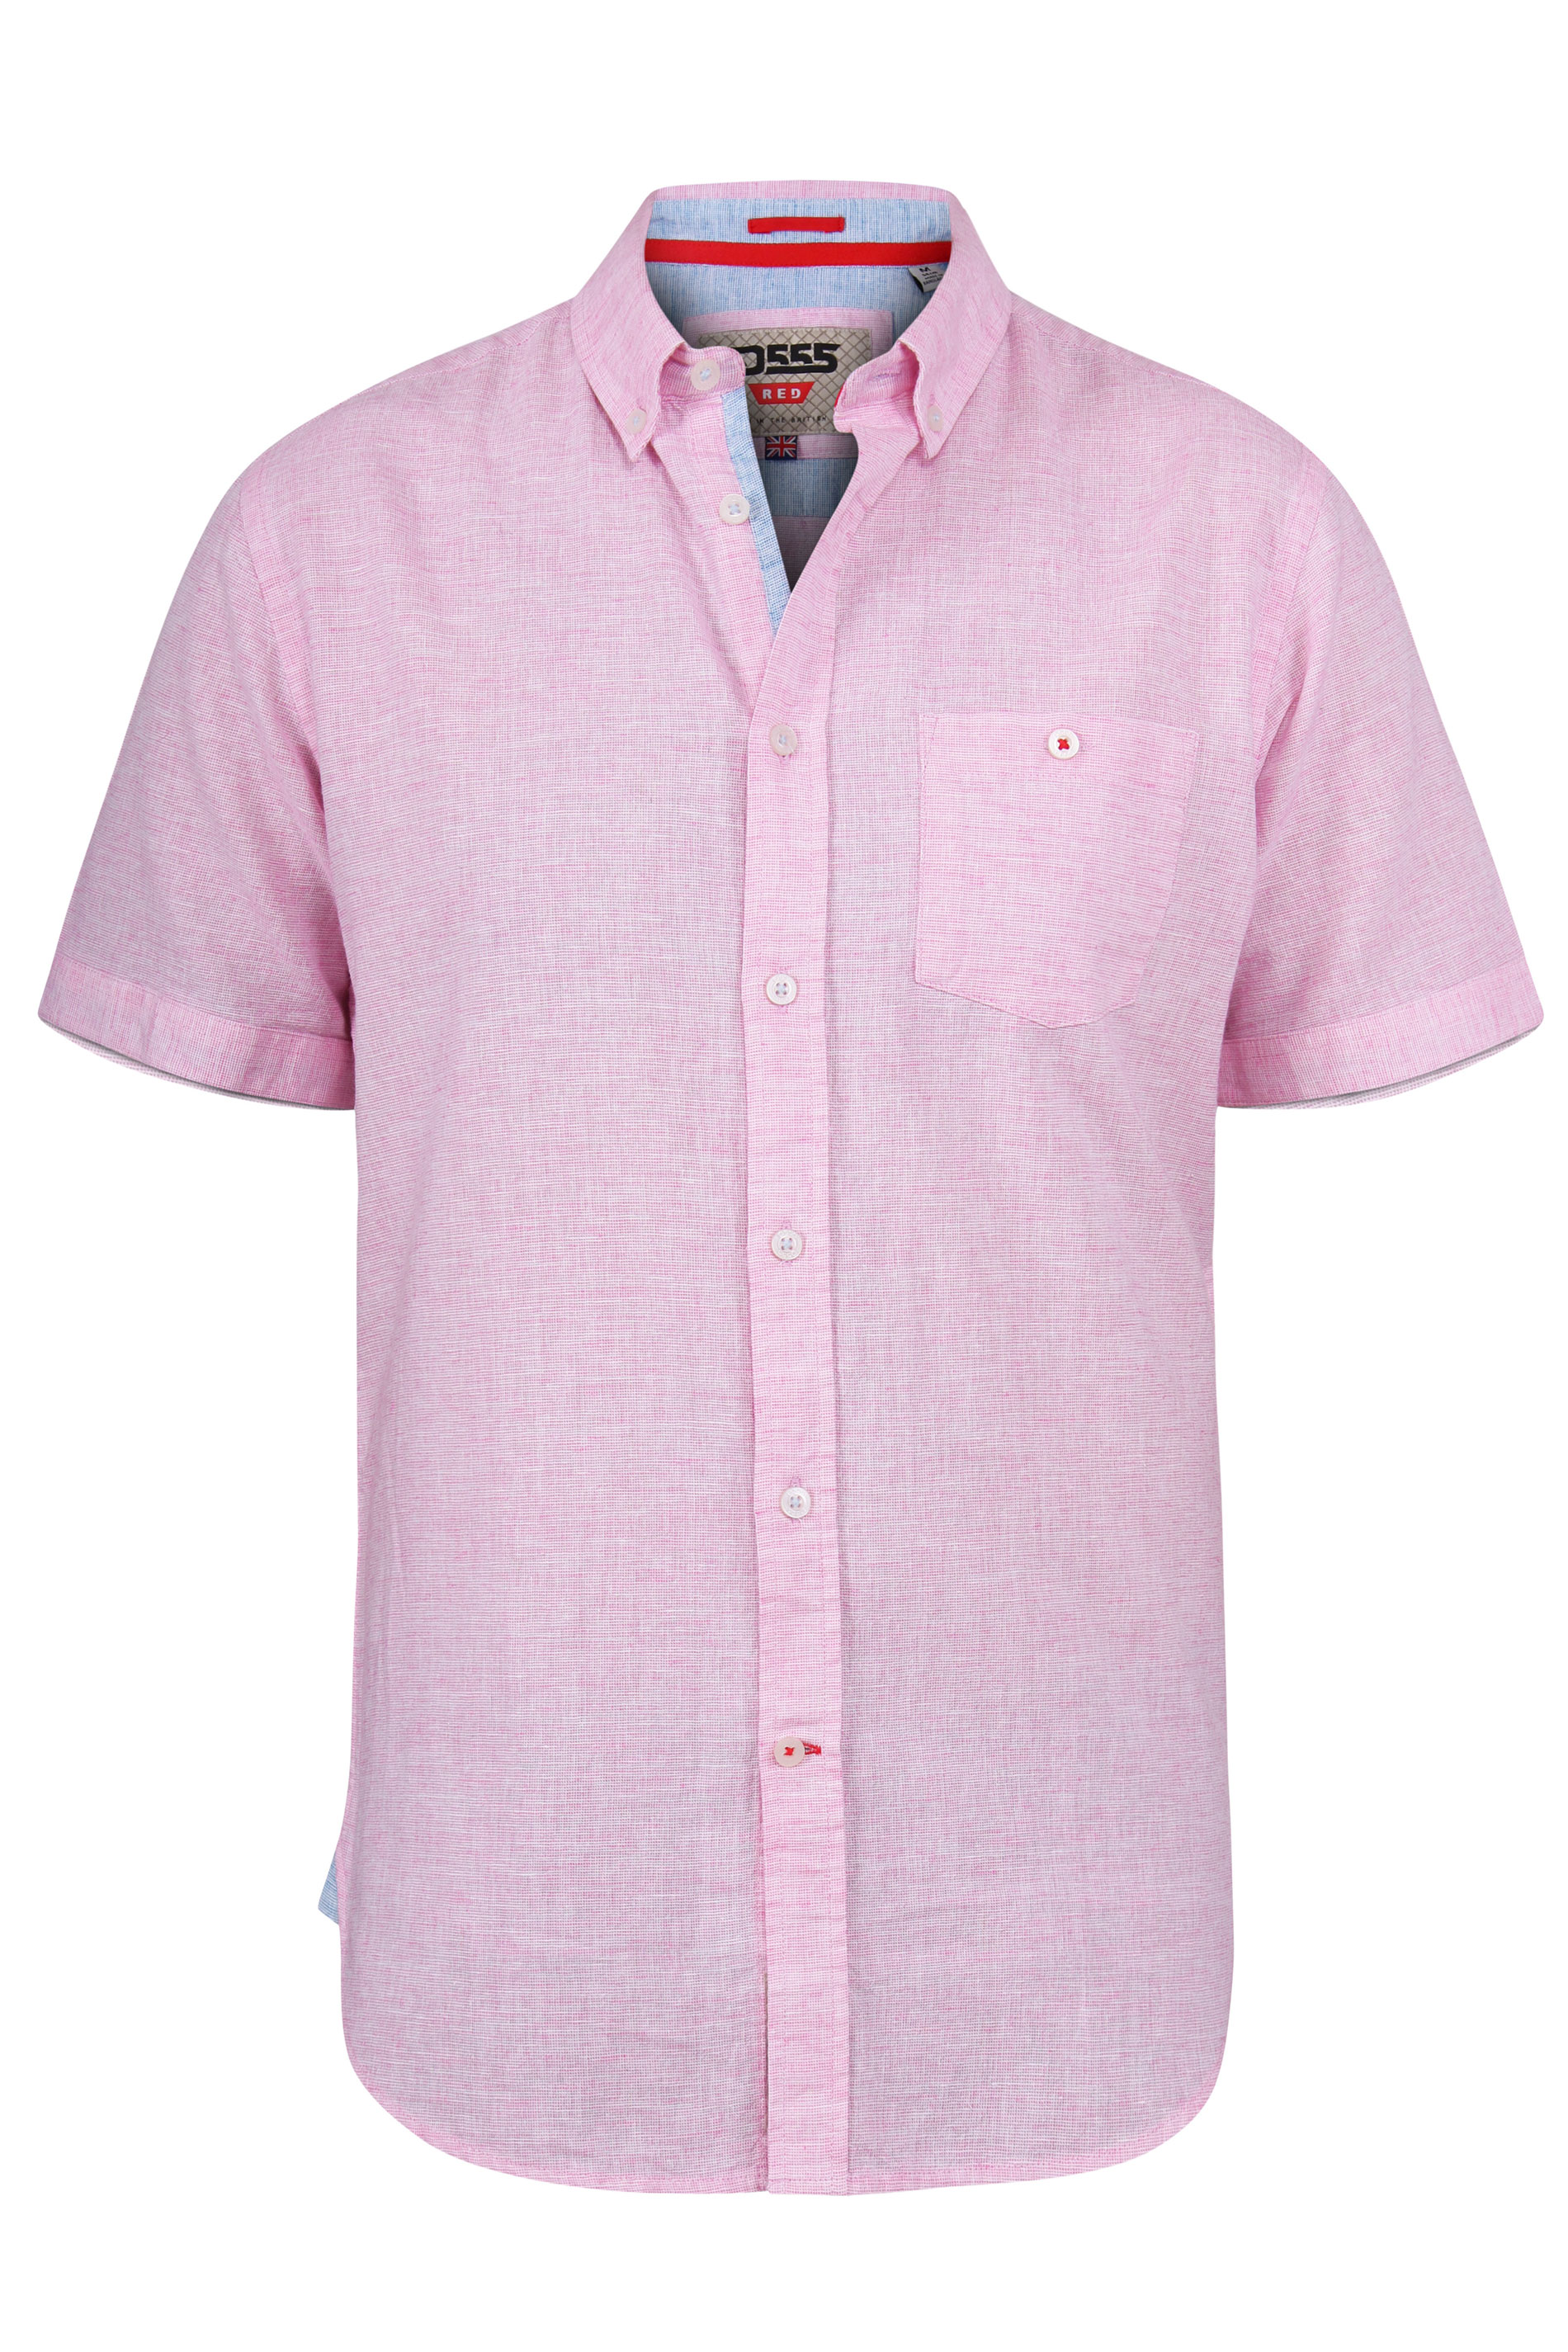 D555 Pink Linen Short Sleeve Shirt | BadRhino